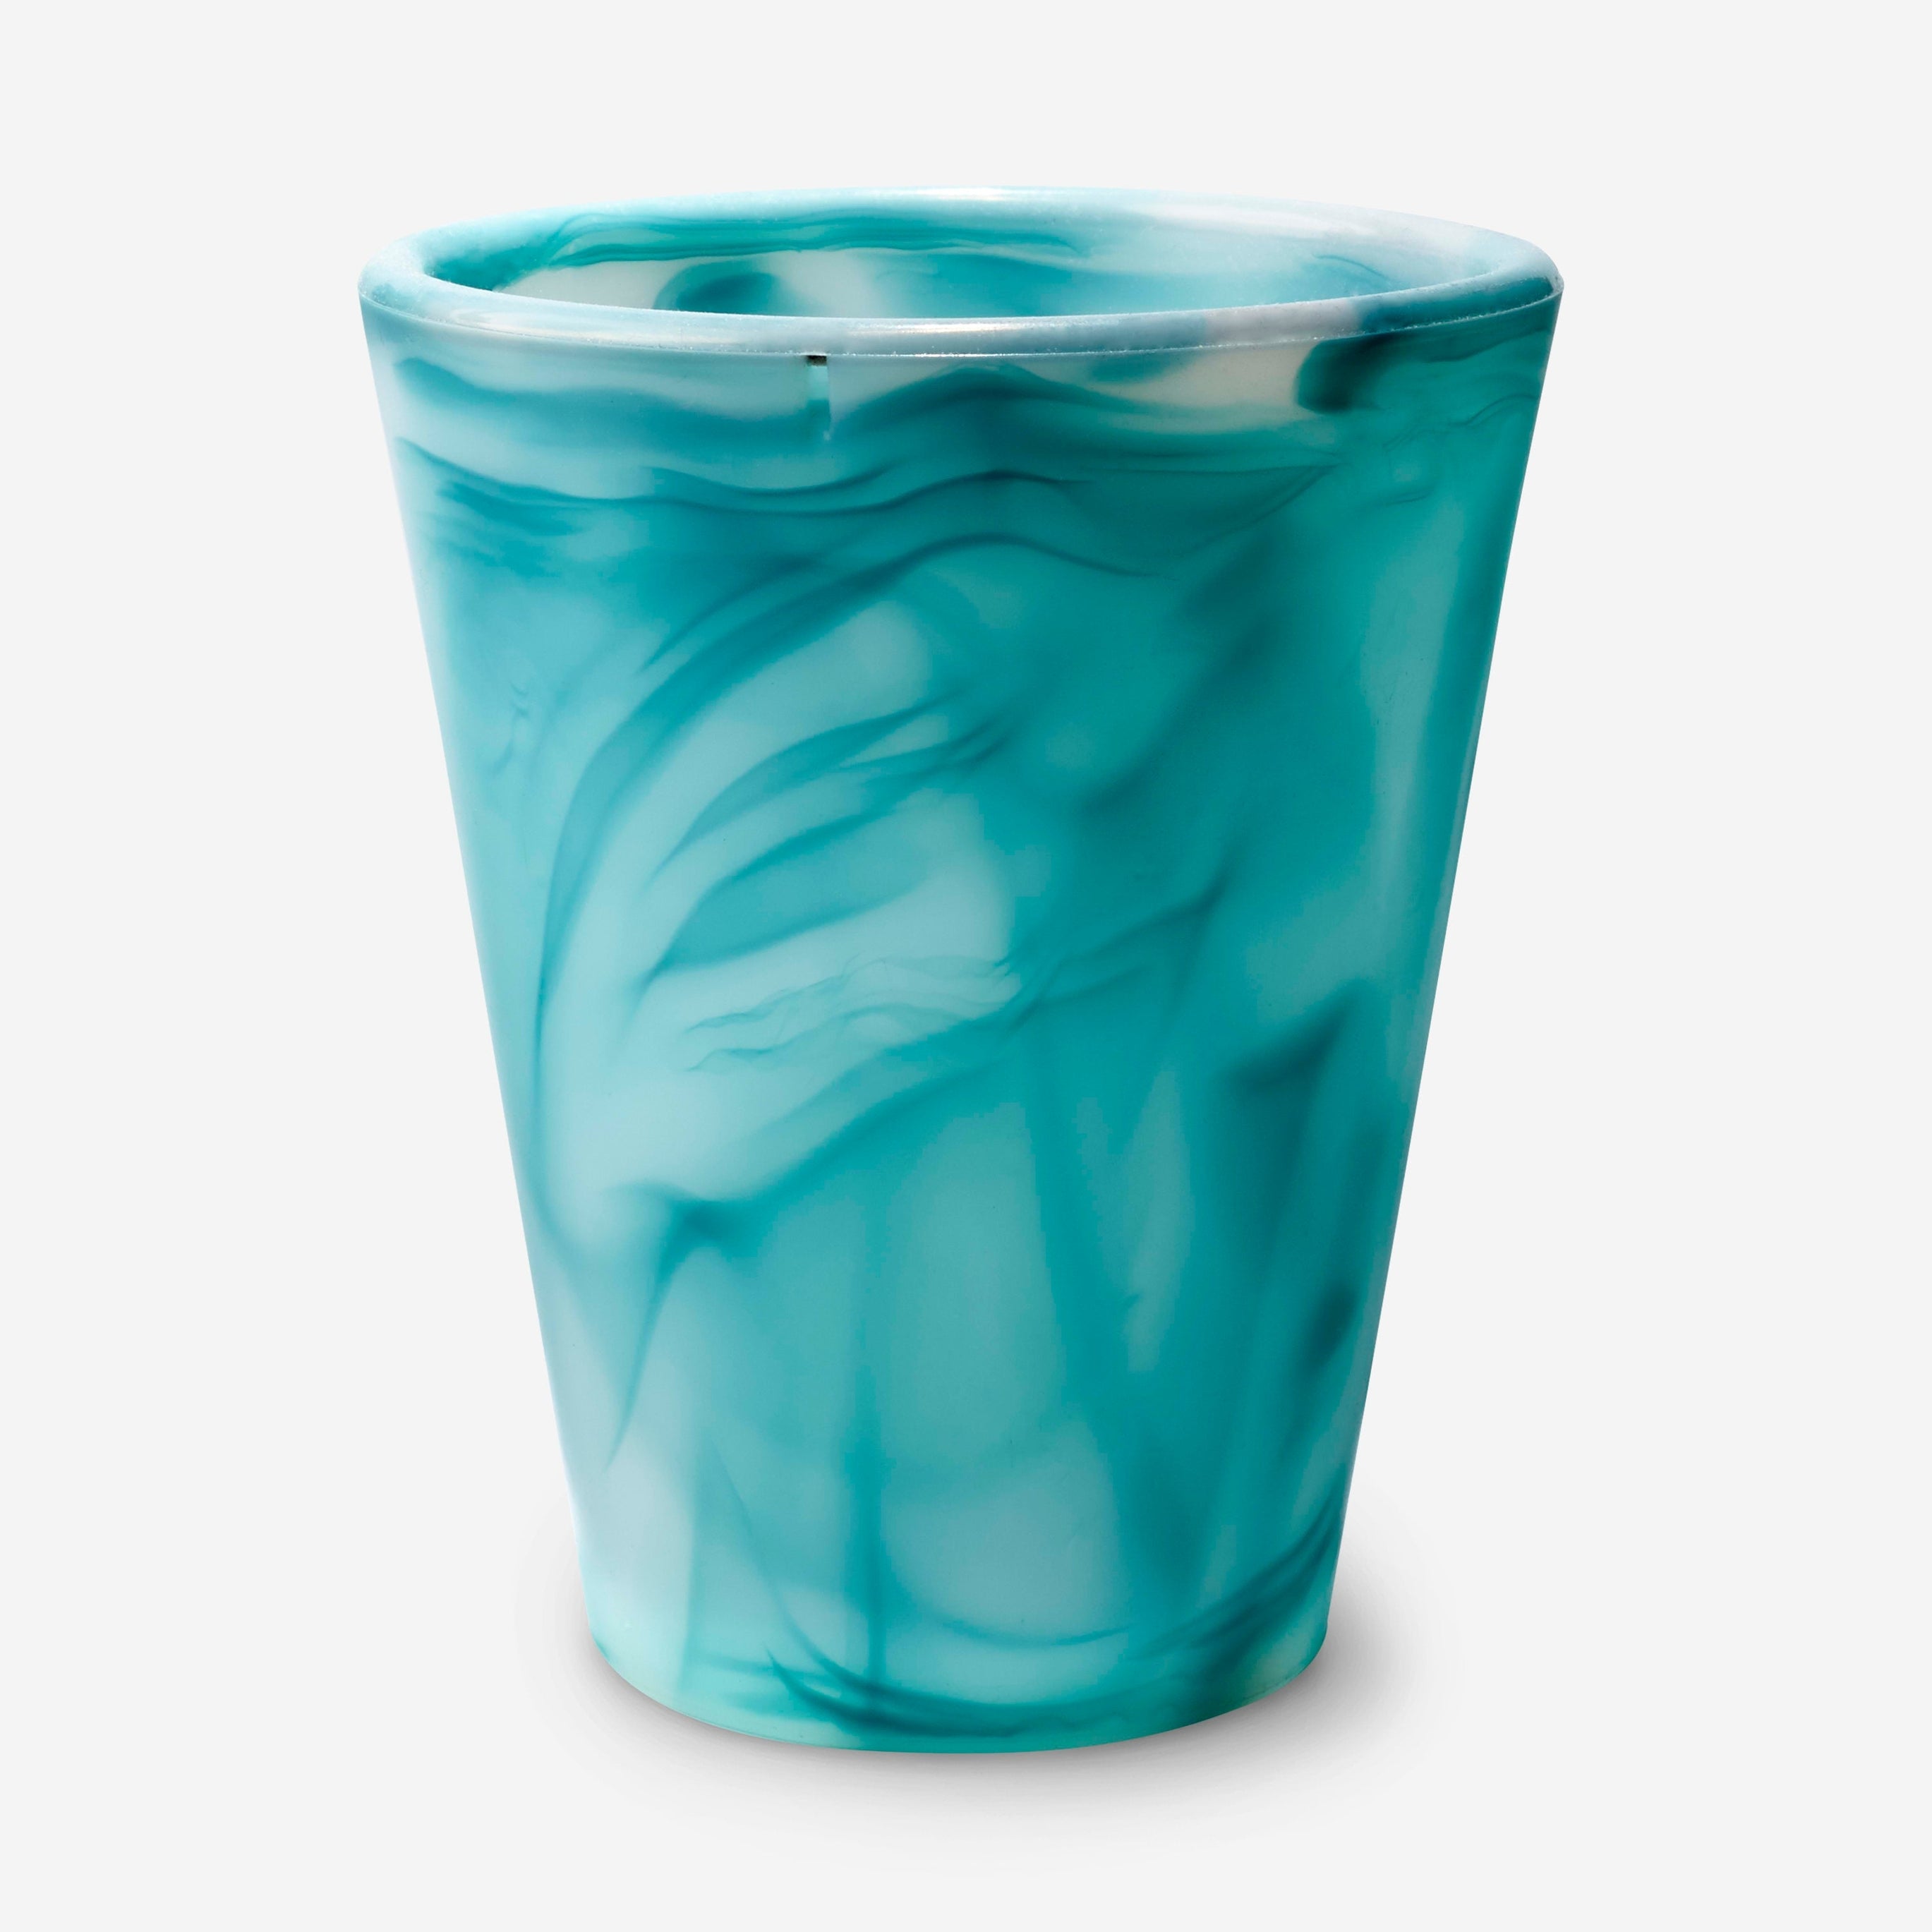 Gosili Silicone Water Cup - 20 oz